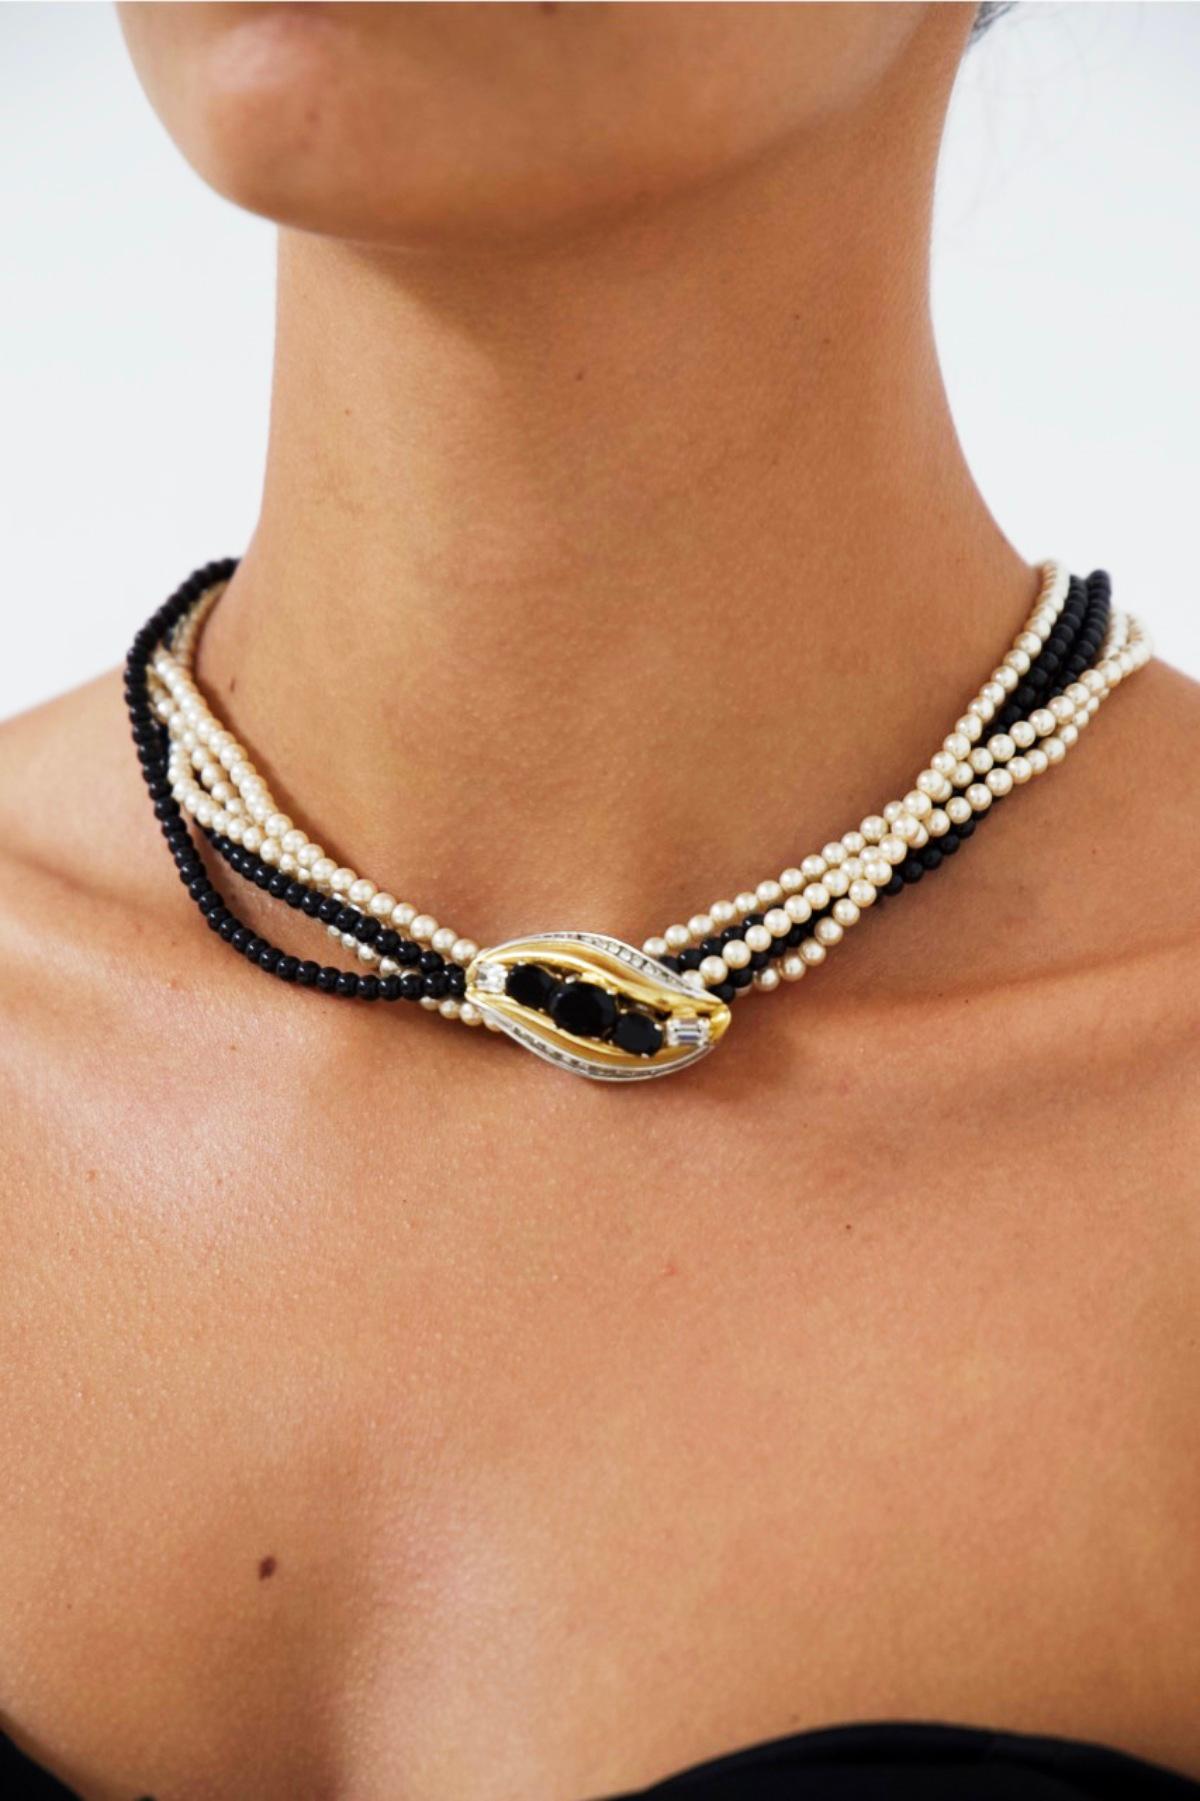 Wunderschönes Doppelperlen-Kropfband aus den 1980er Jahren, feine französische Handwerkskunst.
Die Halskette ist wunderschön und elegant.
Es besteht aus 2 Strängen schwarzer und drei weißen Perlen, sehr elegant. In der Mitte befindet sich ein